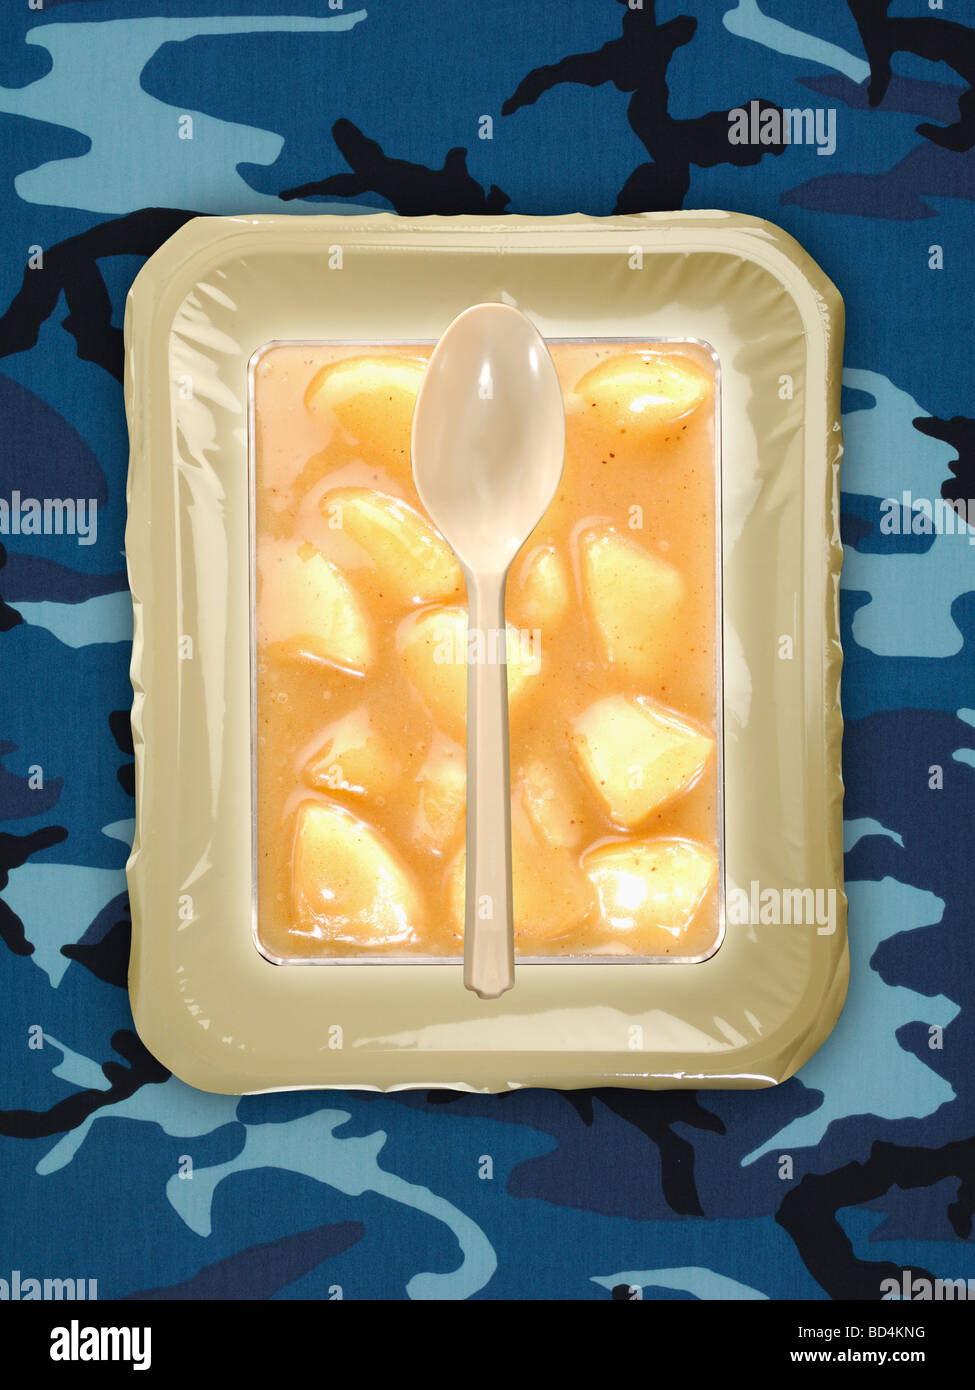 Une ration alimentaire militaire avec une cuillère sur un fond bleu camouflage, tranches de pêches Banque D'Images